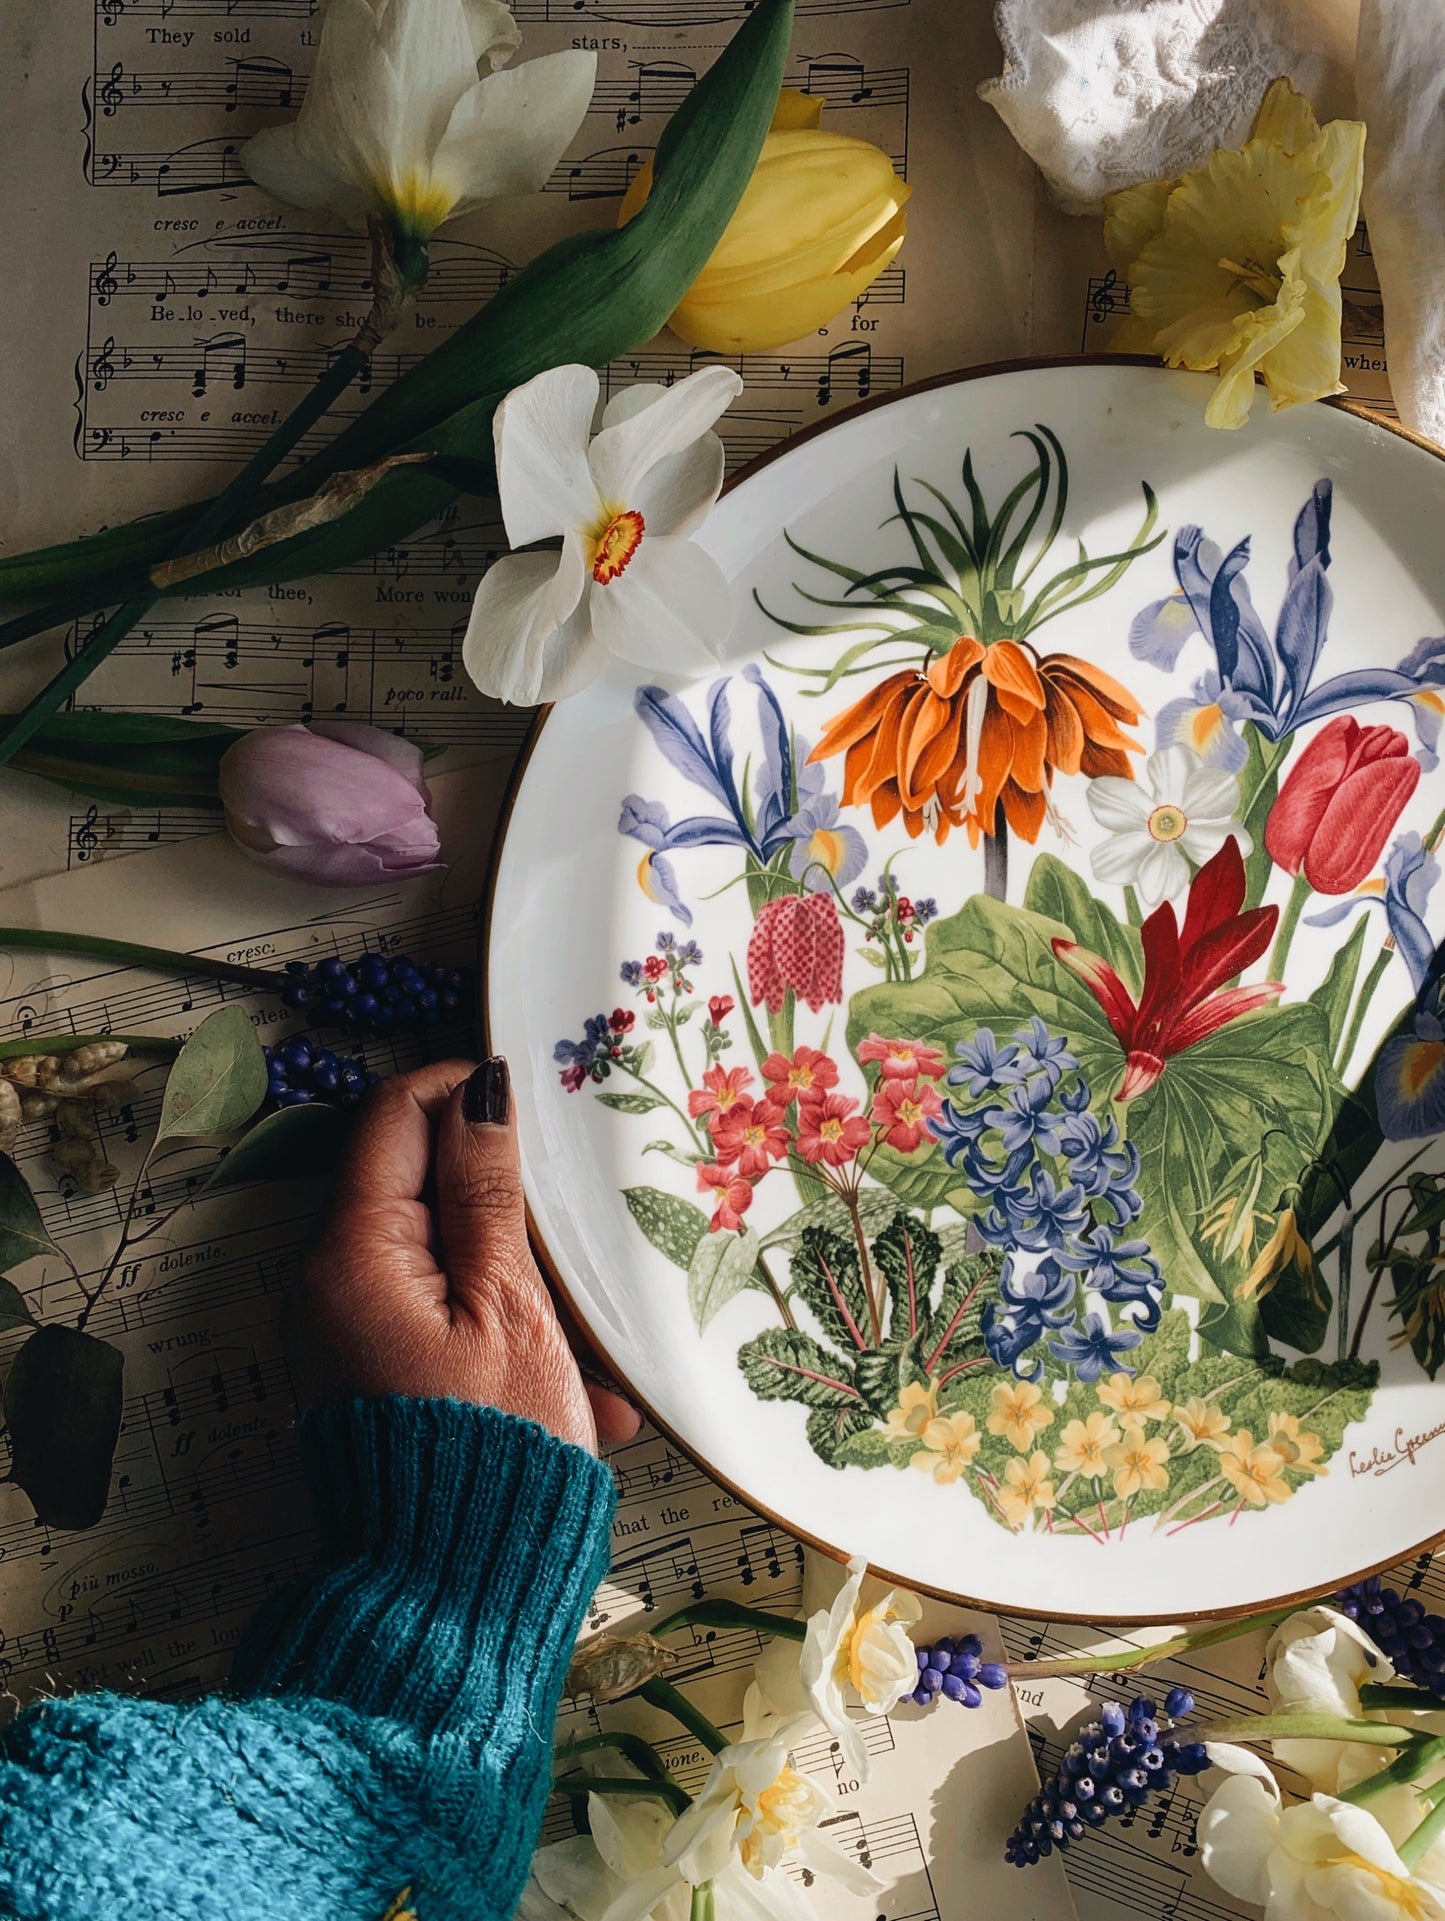 Vintage 1970’s Franklin Porcelain Royal Horticultural April Floral Plate (UK shipping only)